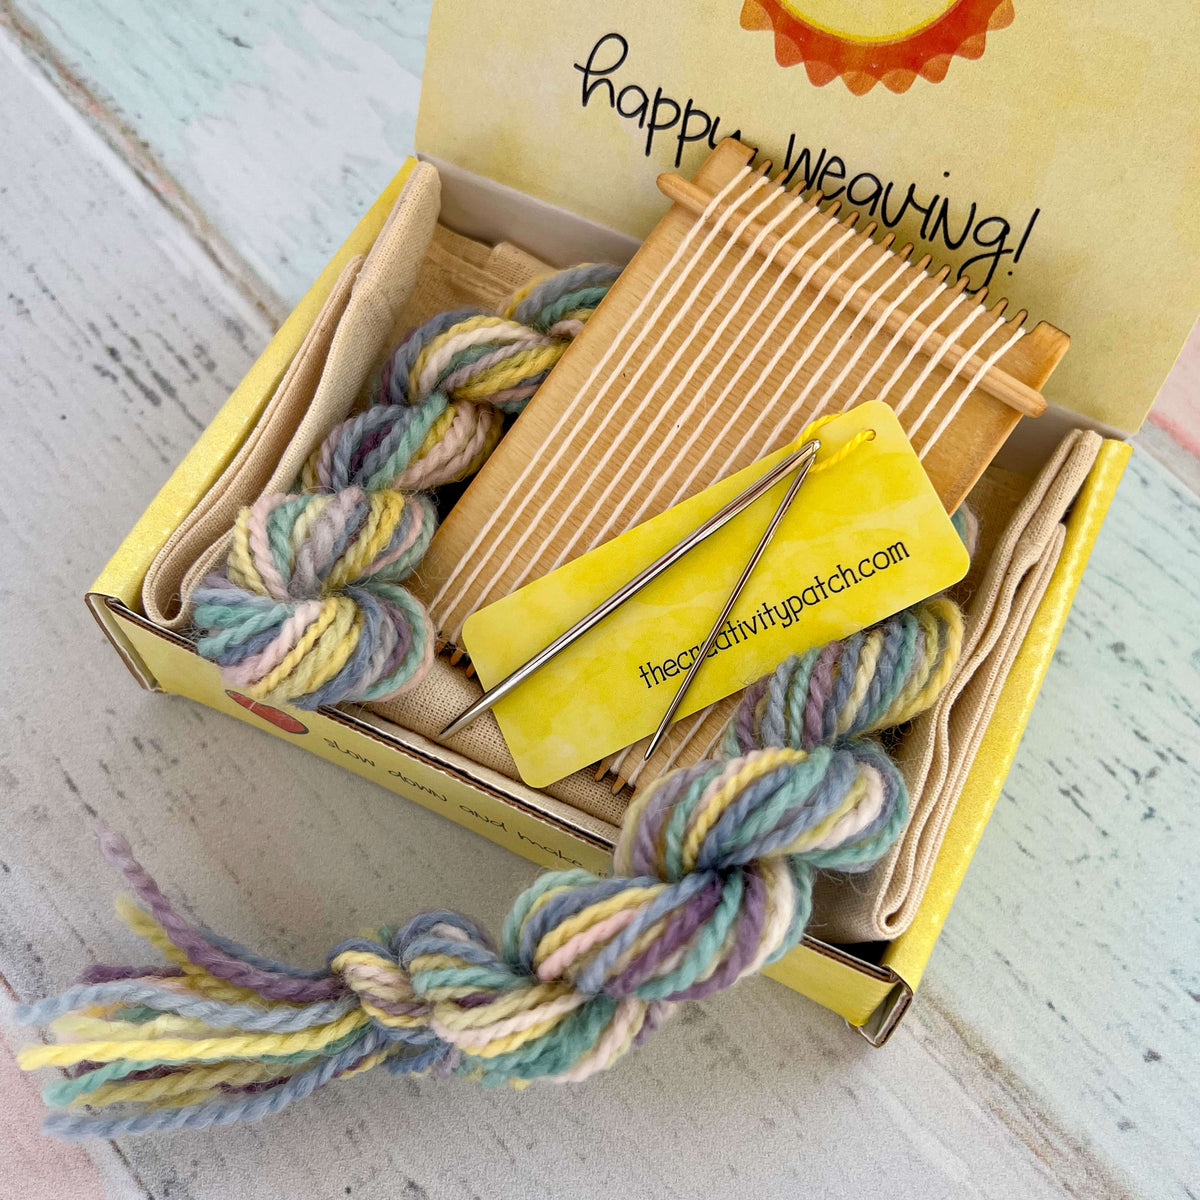 Tiny Loom Kit - Alpaca Blend - Succulent Colors